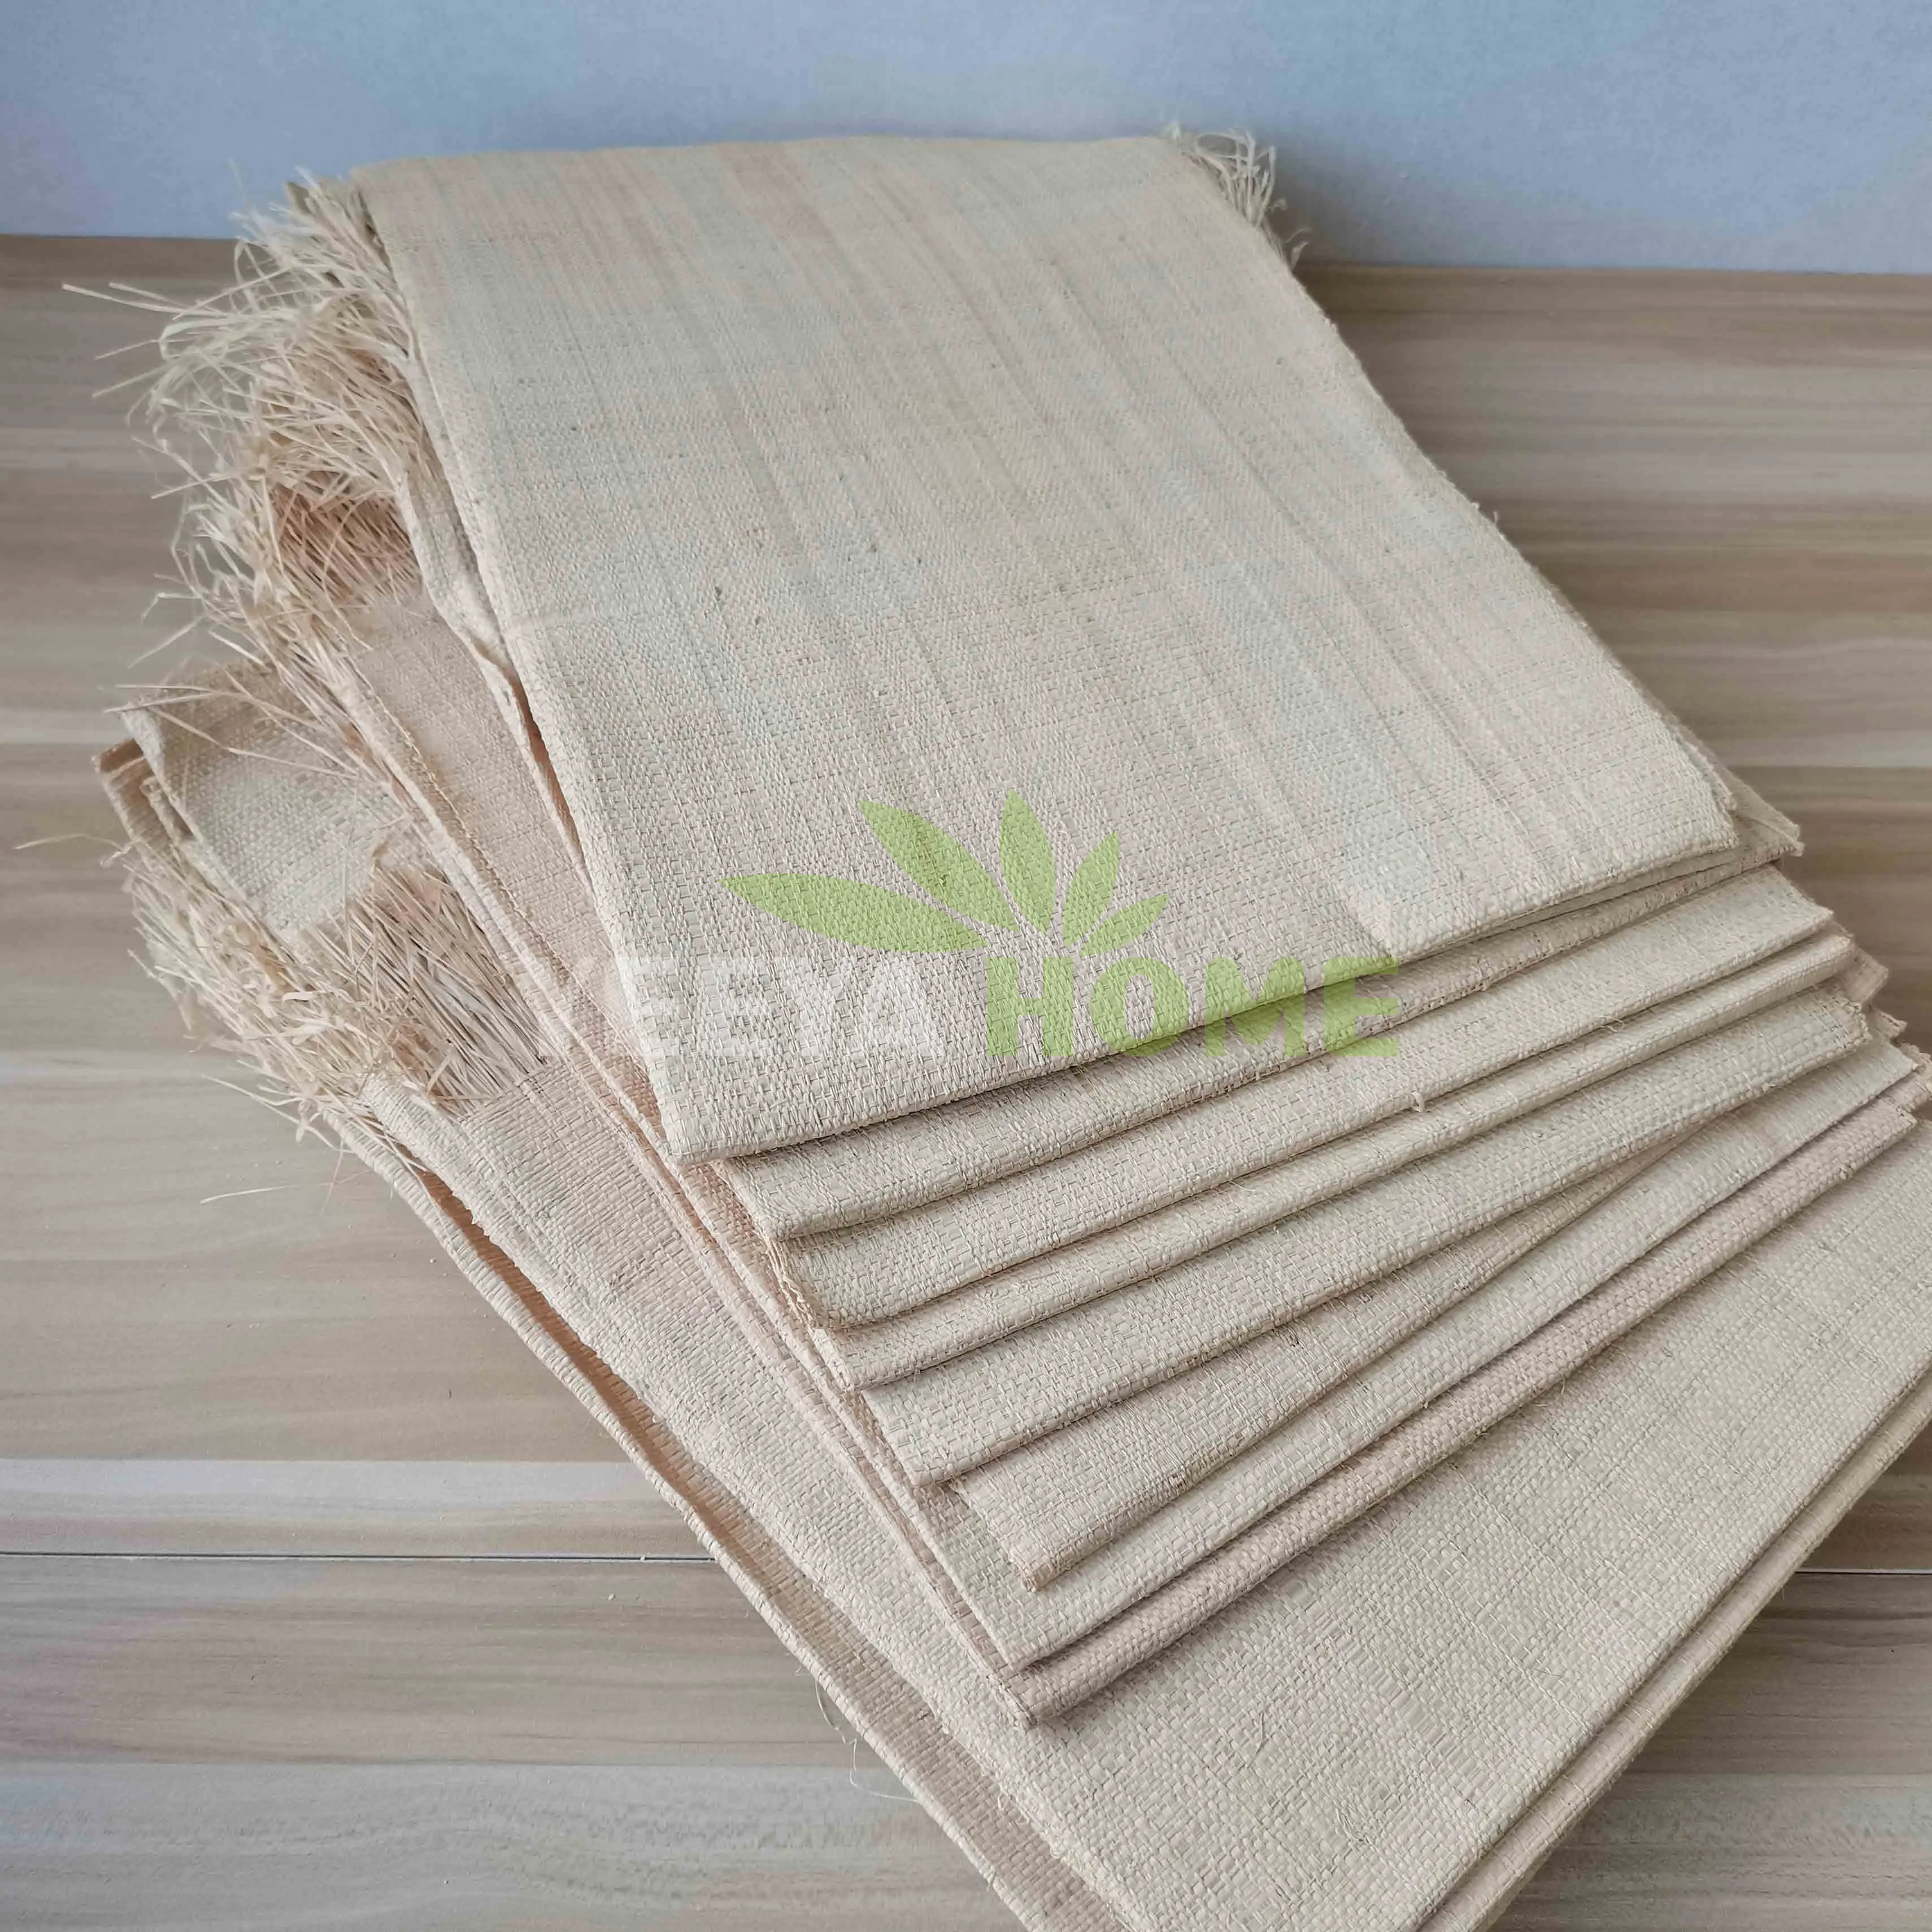 Tela de rafia de 105x65cm, Material de hoja de palma para tejer, hoja de hierba de rafia para bolsos